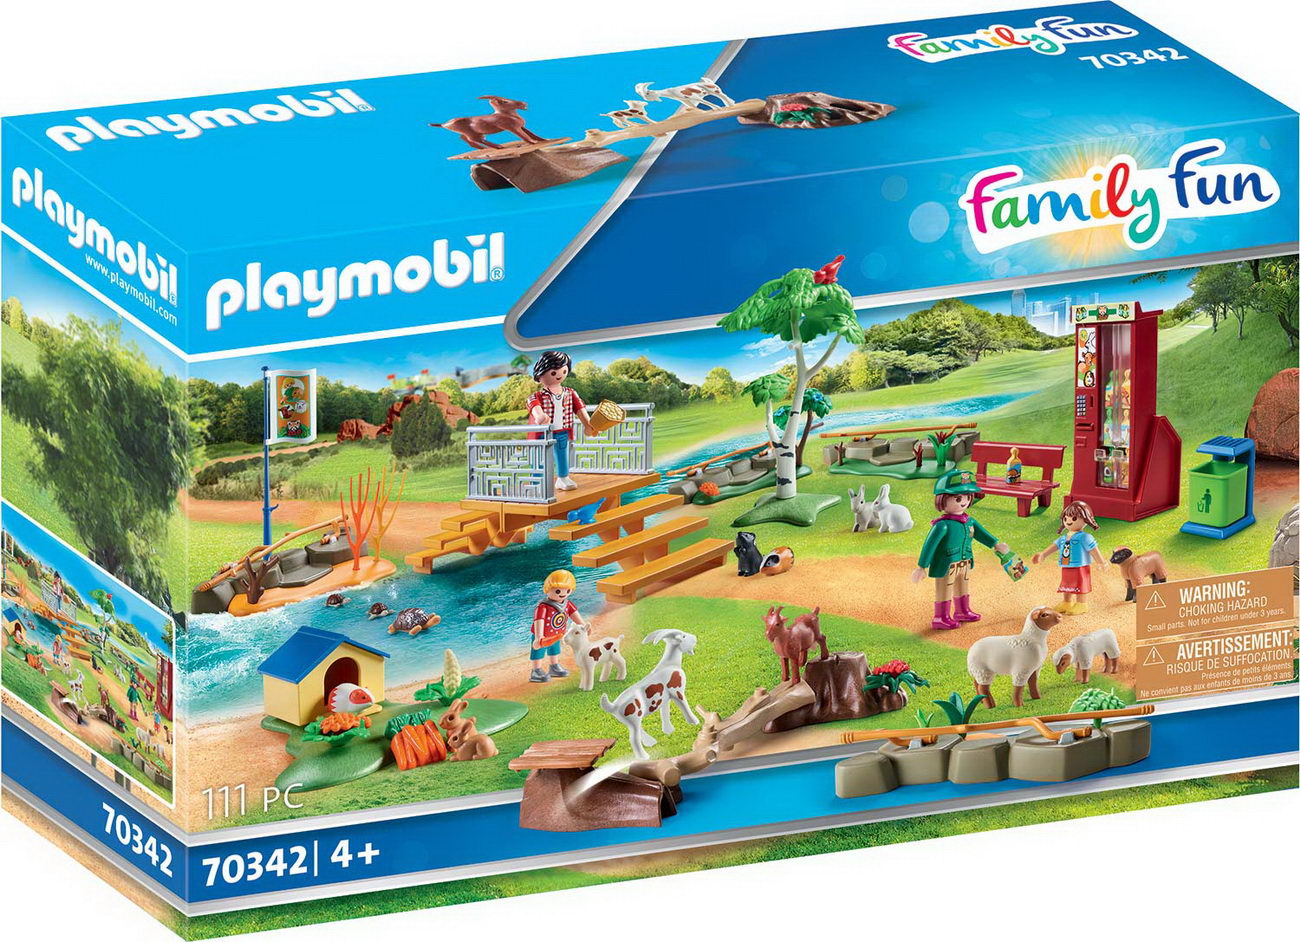 Playmobil 70342 - Erlebnis-Streichelzoo - Family Fun